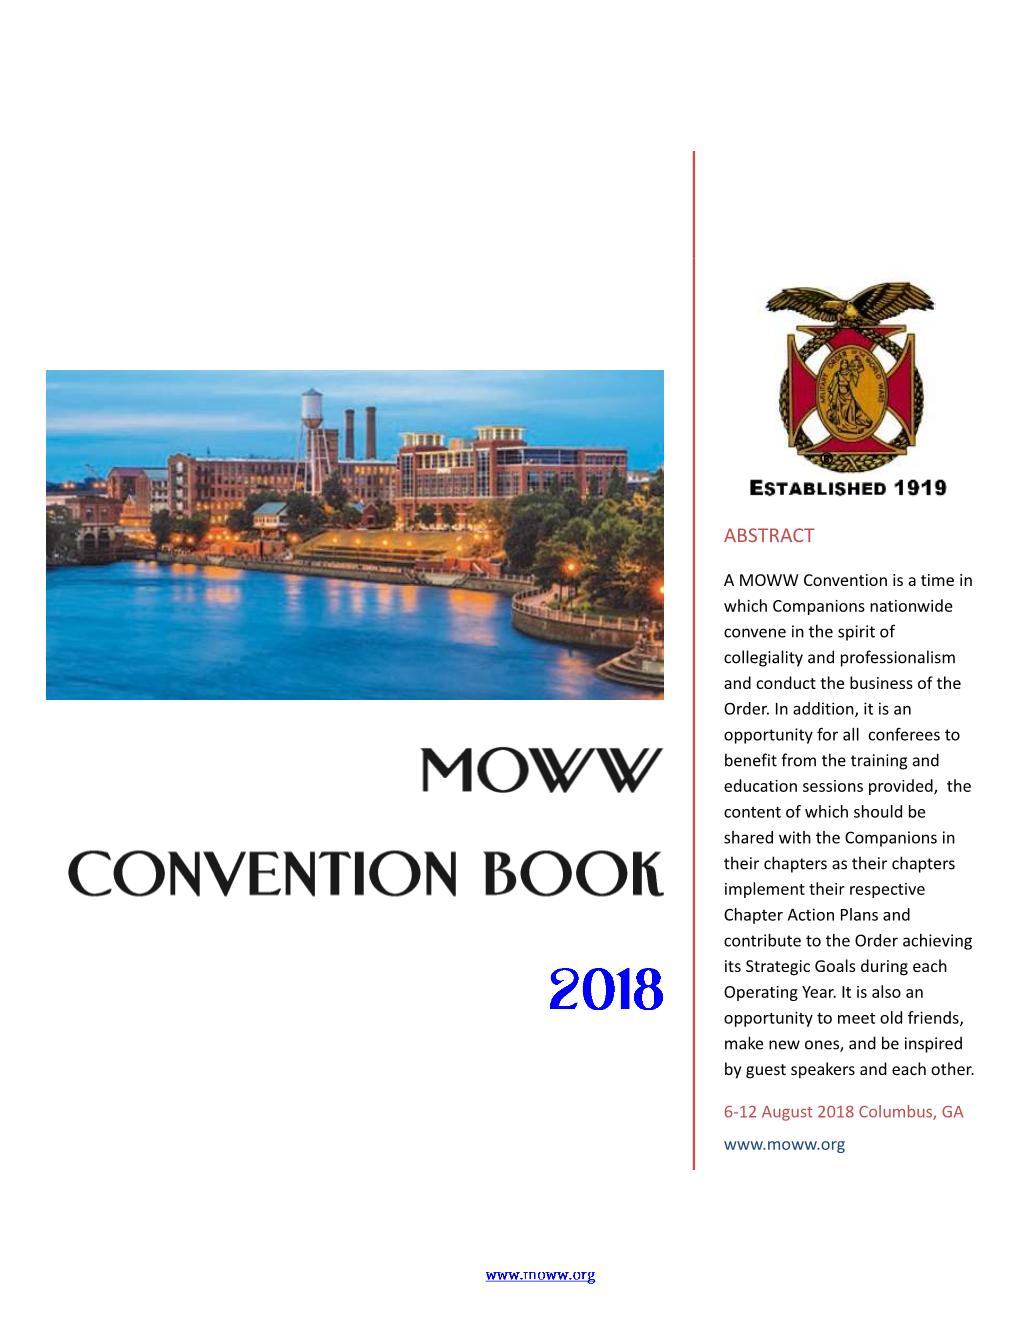 MOWW Convention Book P a G E | 1